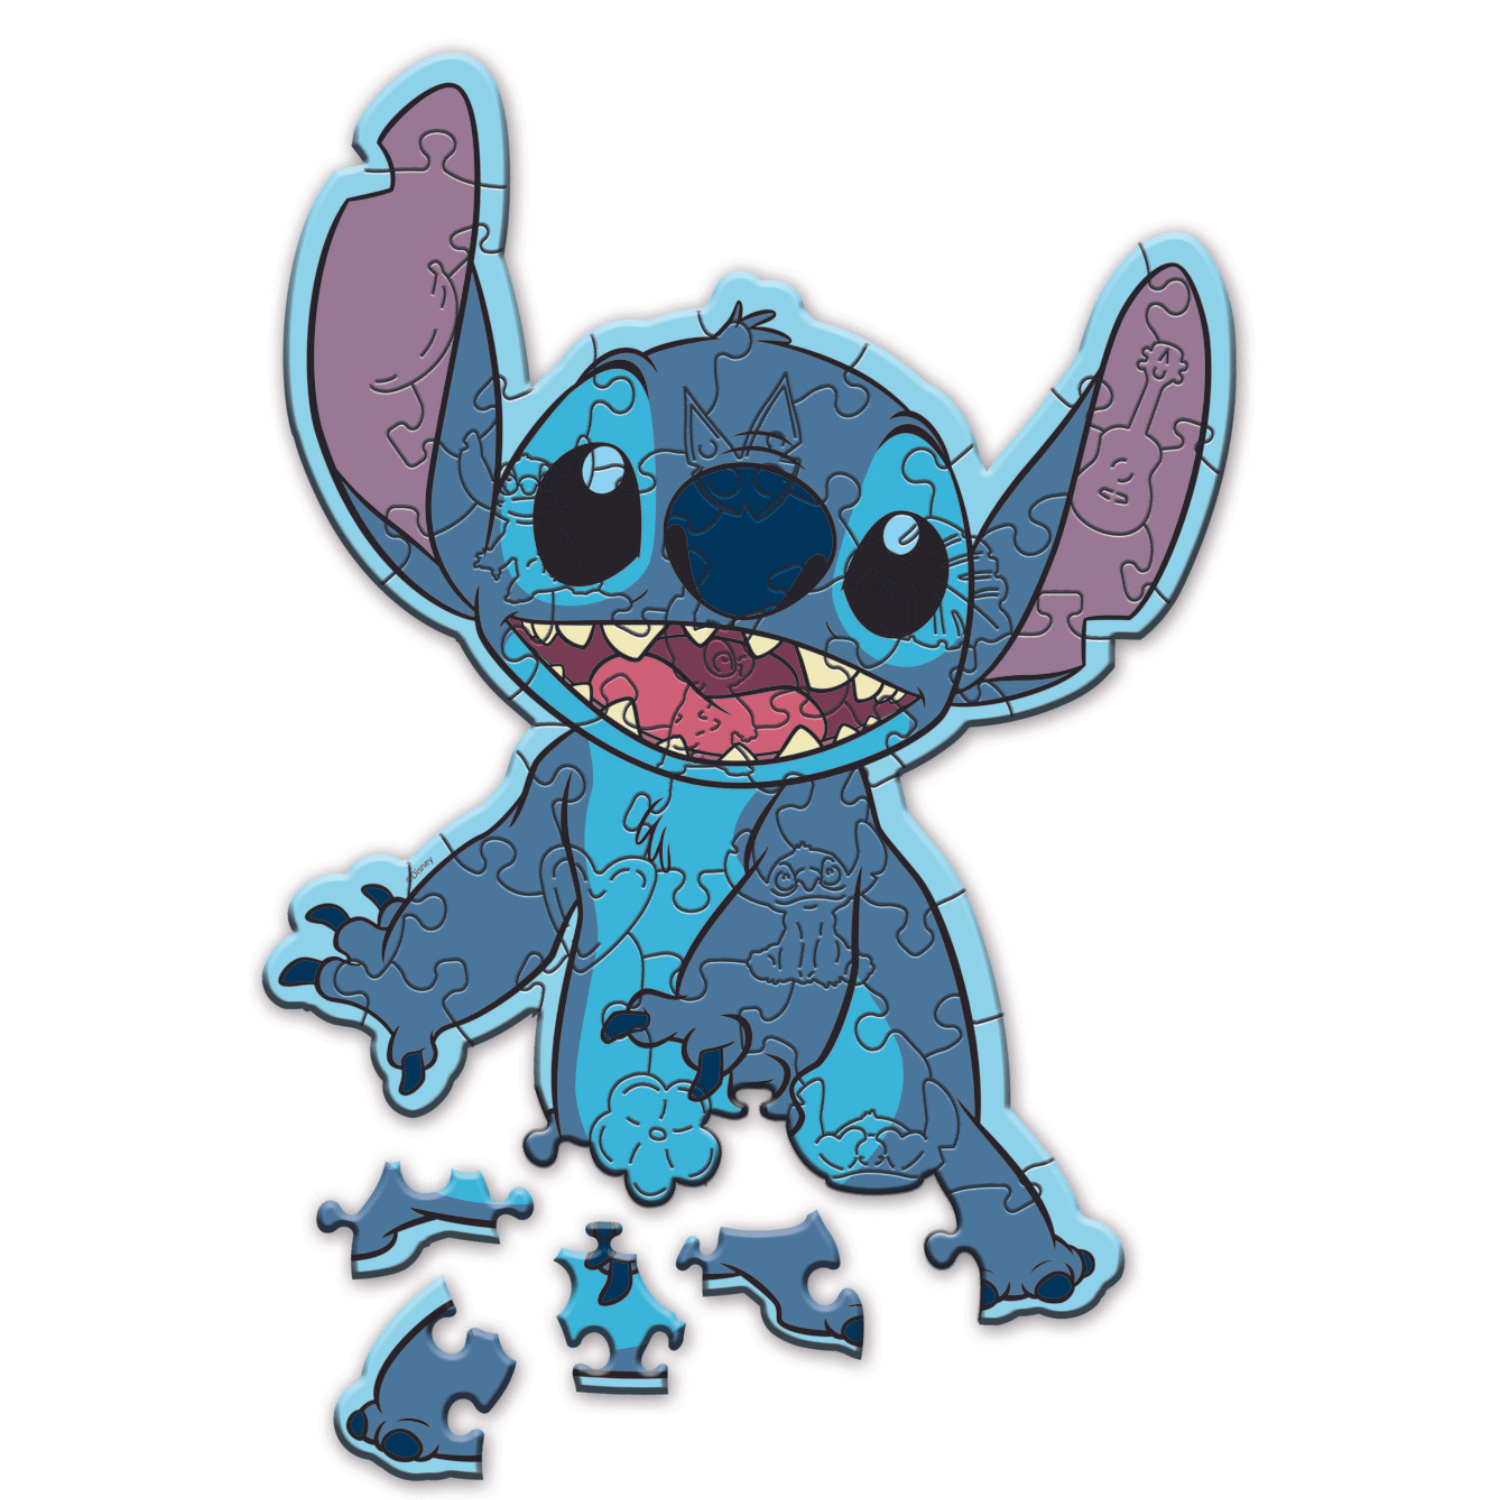 Disney, Stitch by Lilo & Stitch Puzzle